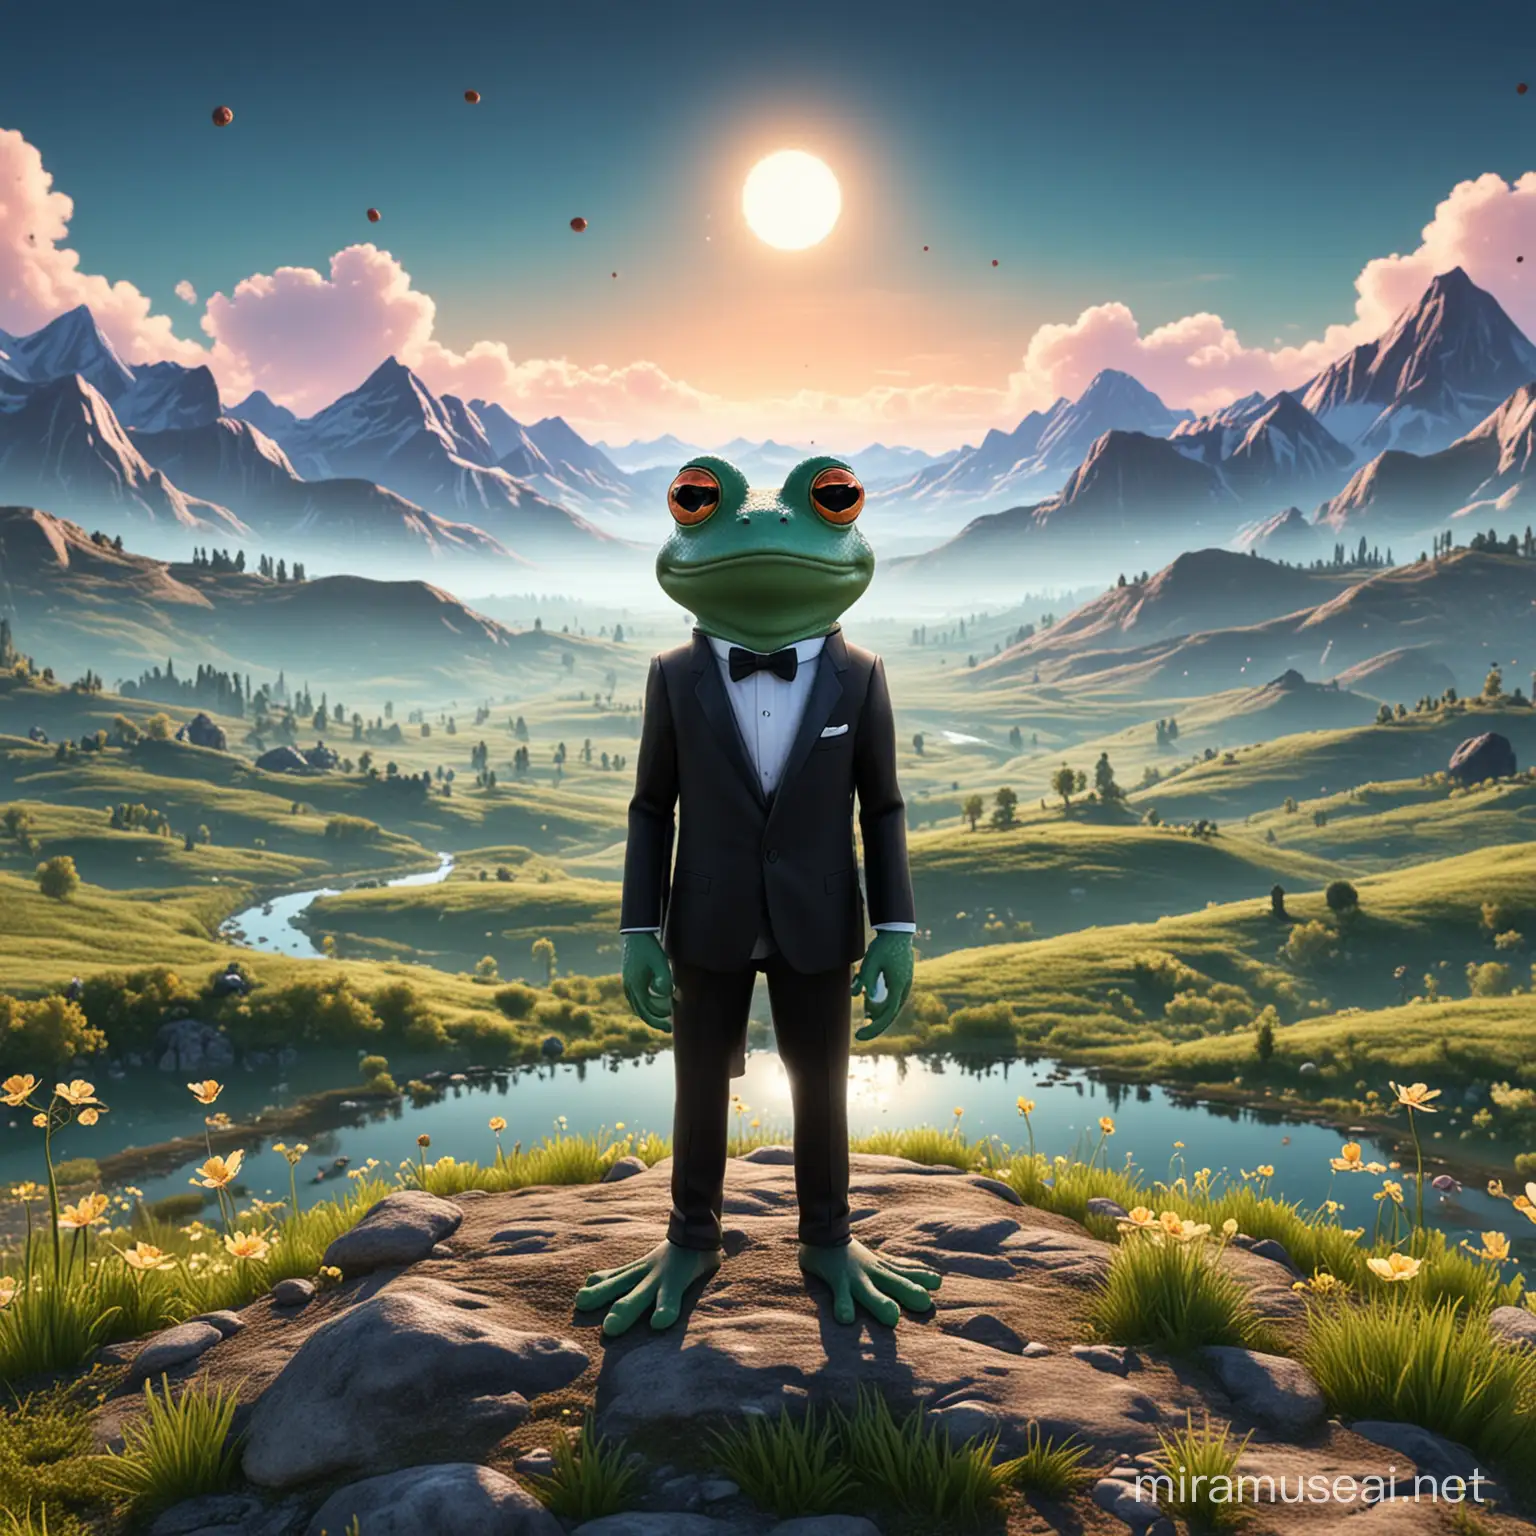 Cartoon Virus Frogs Admiring Digital Valley Scenery